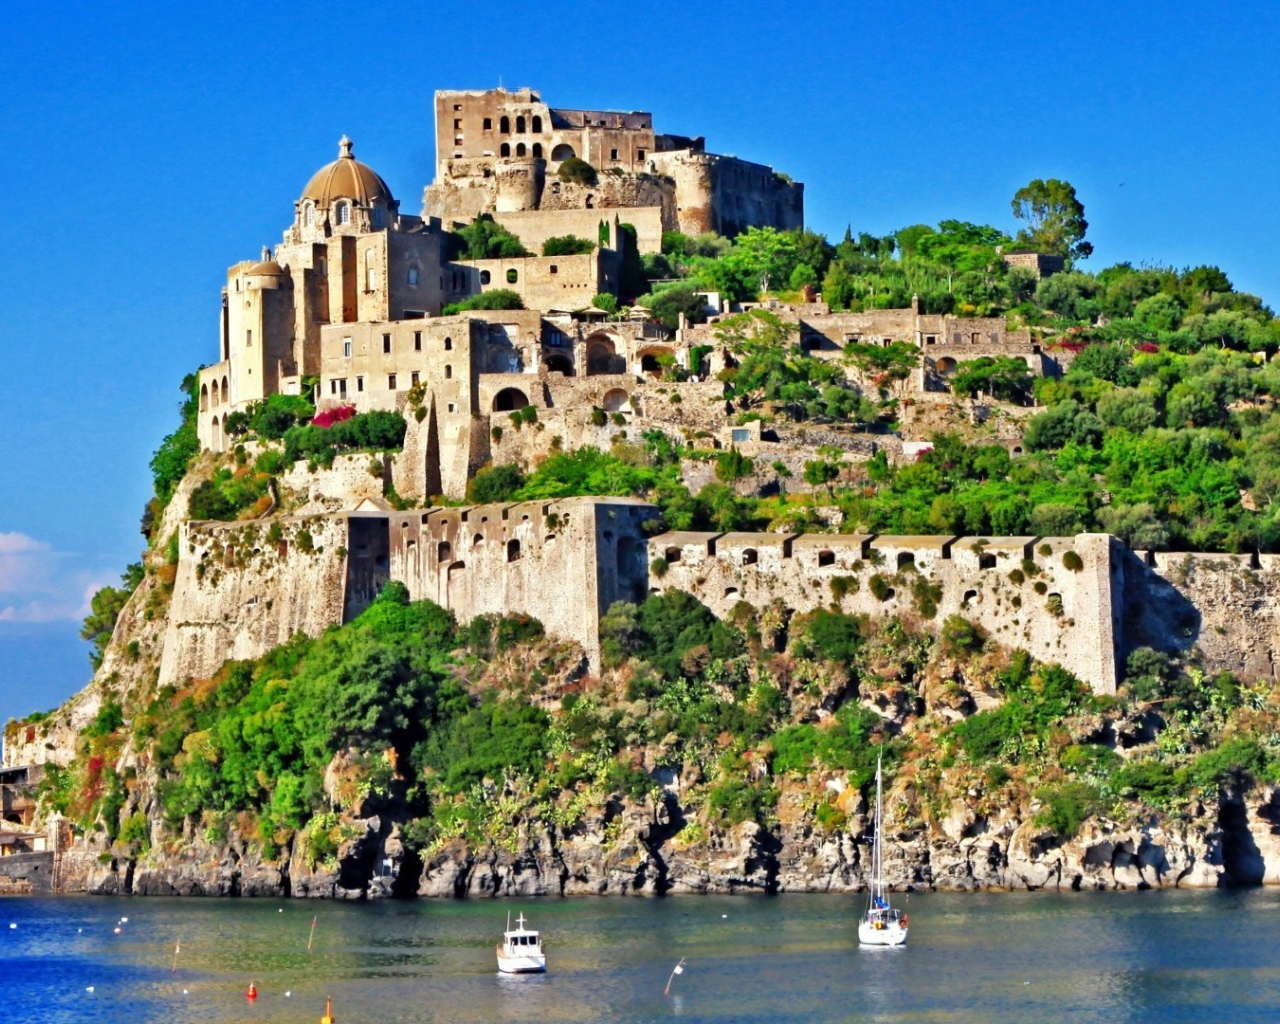 Замок на скале на острове Искья, Италия